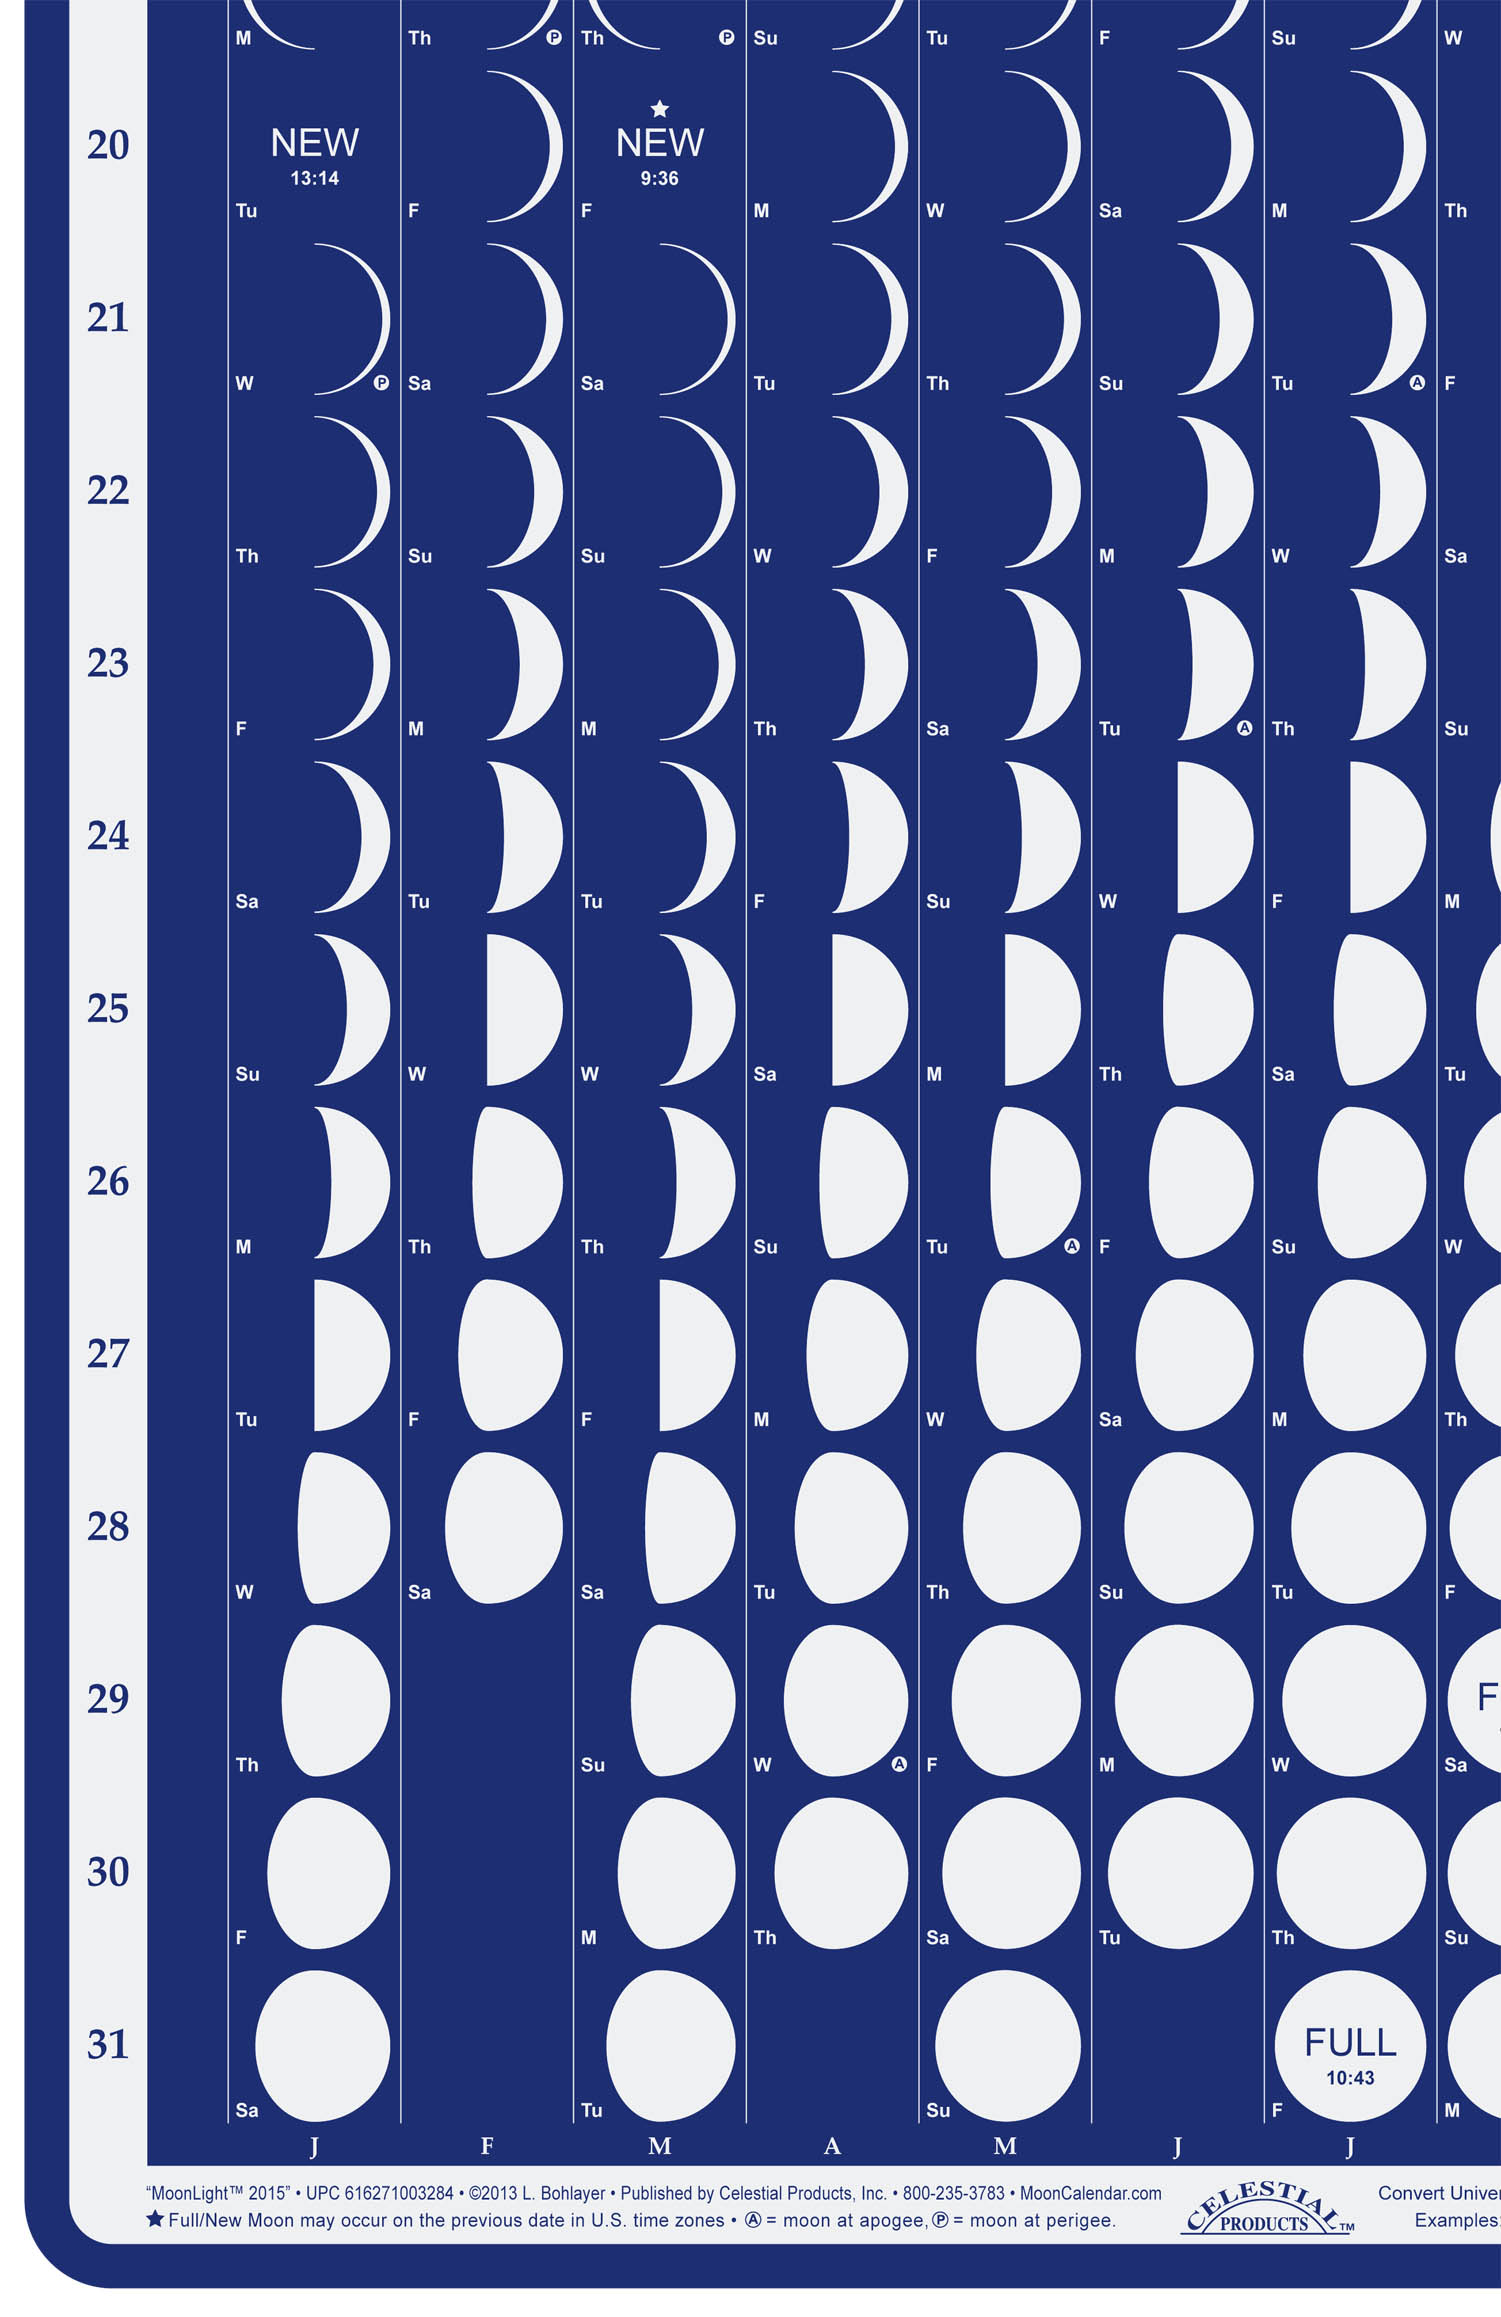 moonlight2015-moon-calendar-lunar-calendar